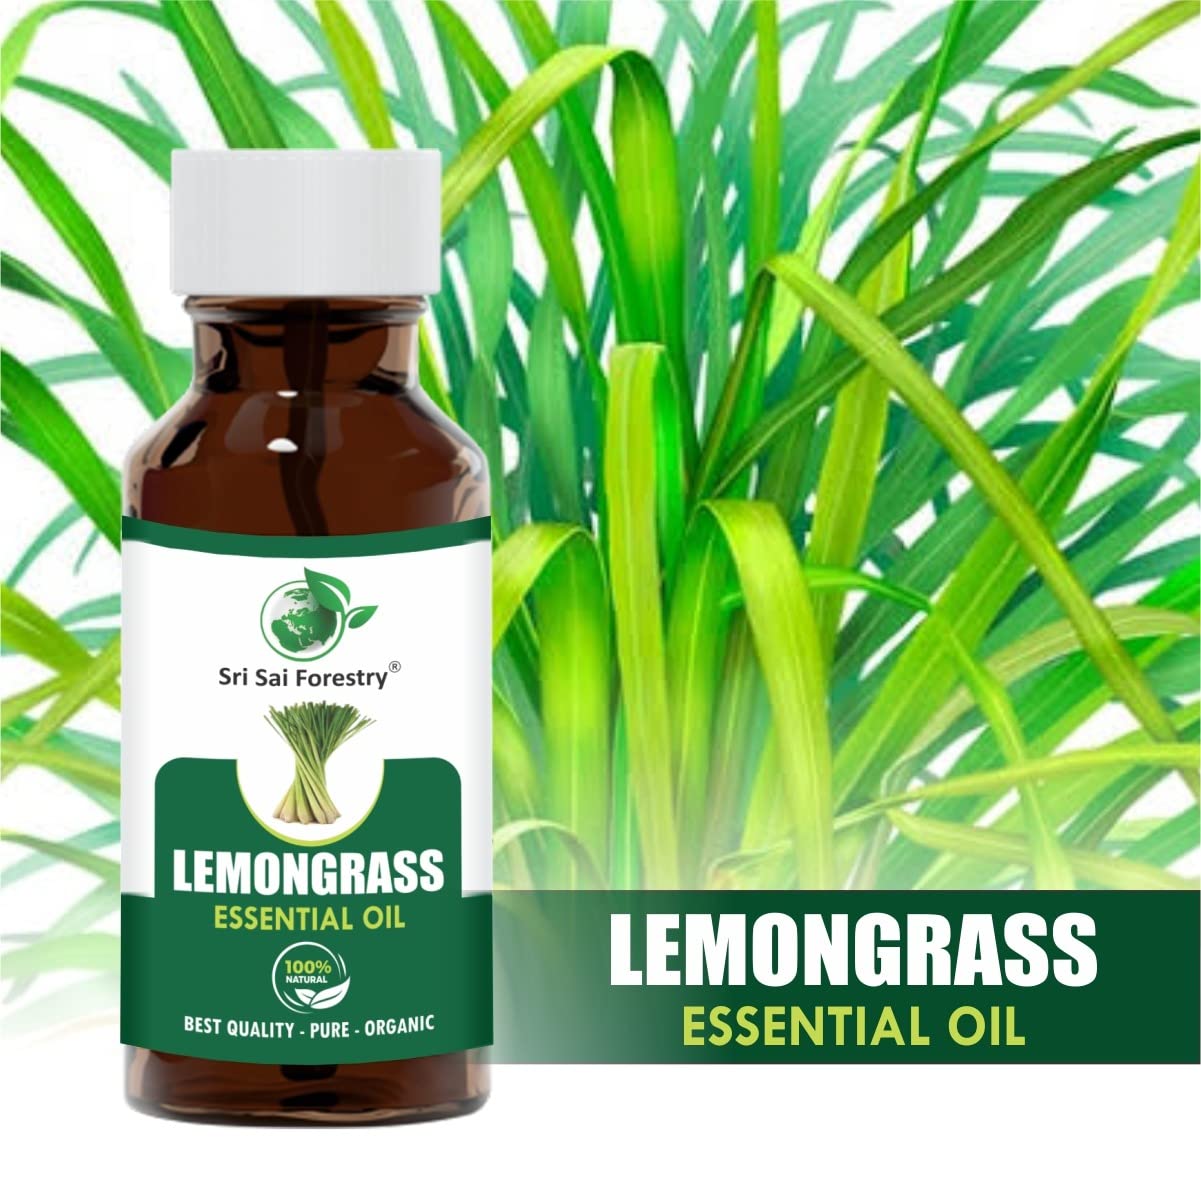 Nilgiri Hills 100% Pure Organic Lemon Grass Essential Oil, 100ml | Lemongrass Oil for Home Fragrance